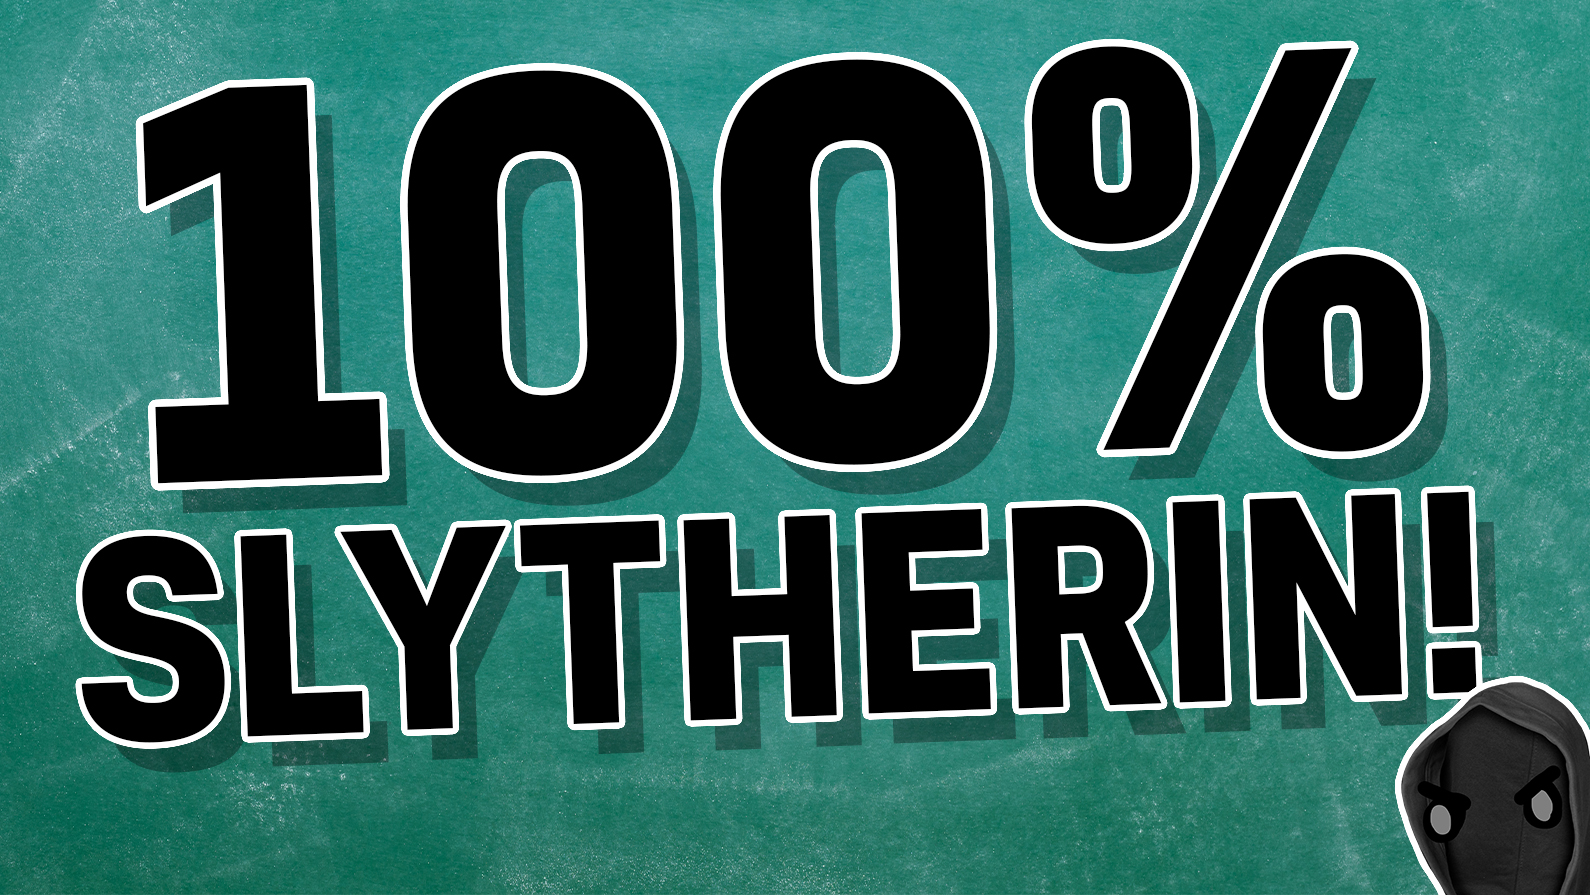 100% Slytherin